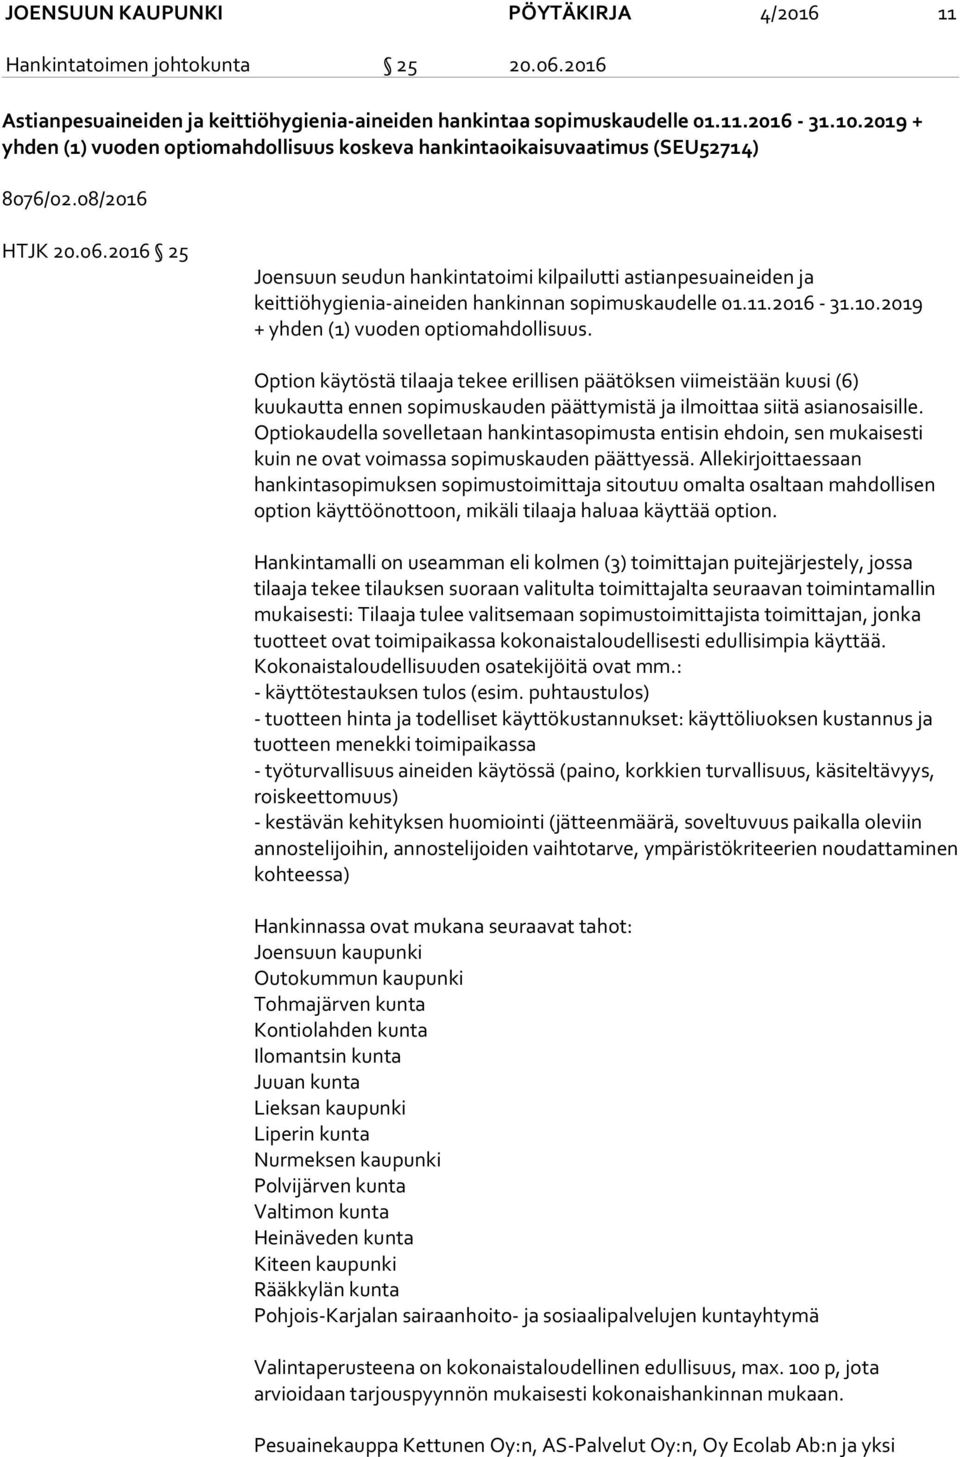 2016 25 Joensuun seudun hankintatoimi kilpailutti astianpesuaineiden ja keittiöhygienia-aineiden hankinnan sopimuskaudelle 01.11.2016-31.10.2019 + yhden (1) vuoden optiomahdollisuus.